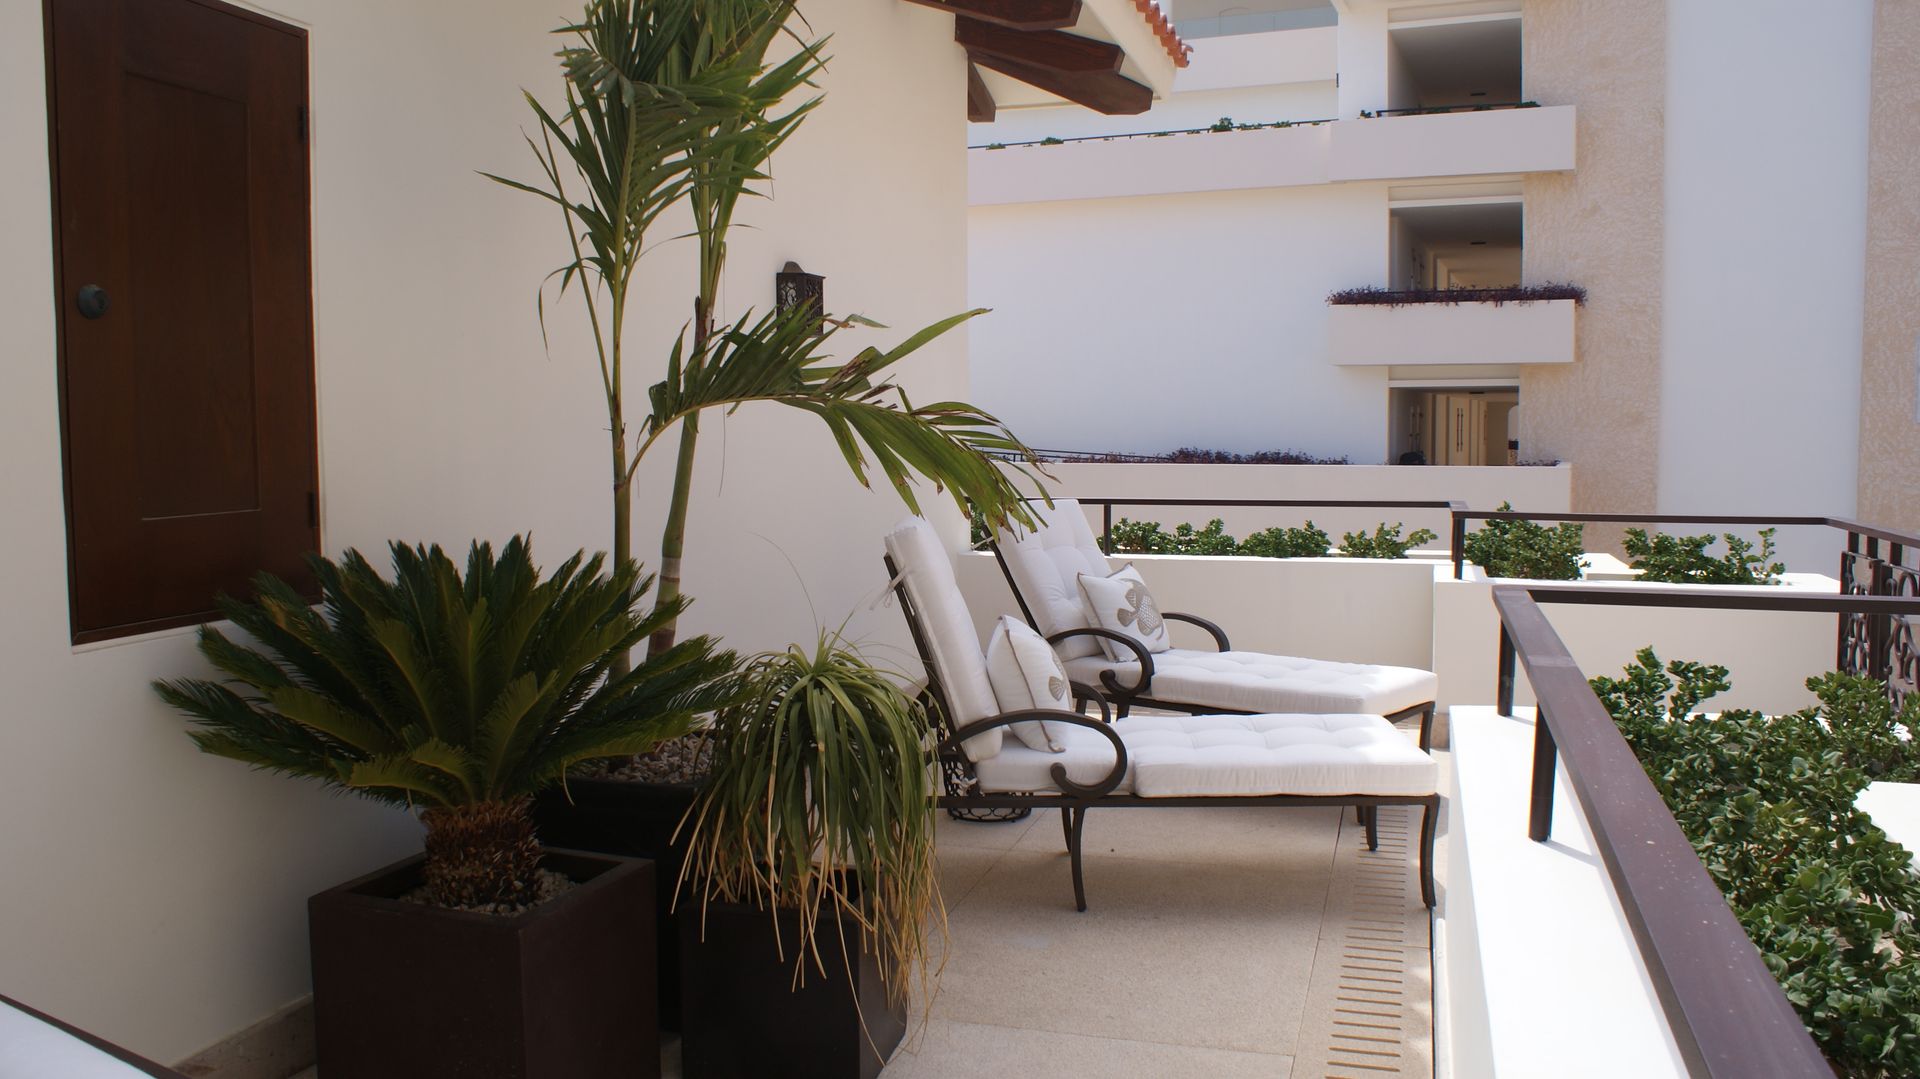 OUTDOOR LIVING LOS CABOS BY DIAZ DE LUNA, DIAZ DE LUNA SIGNATURE DIAZ DE LUNA SIGNATURE Moderne balkons, veranda's en terrassen